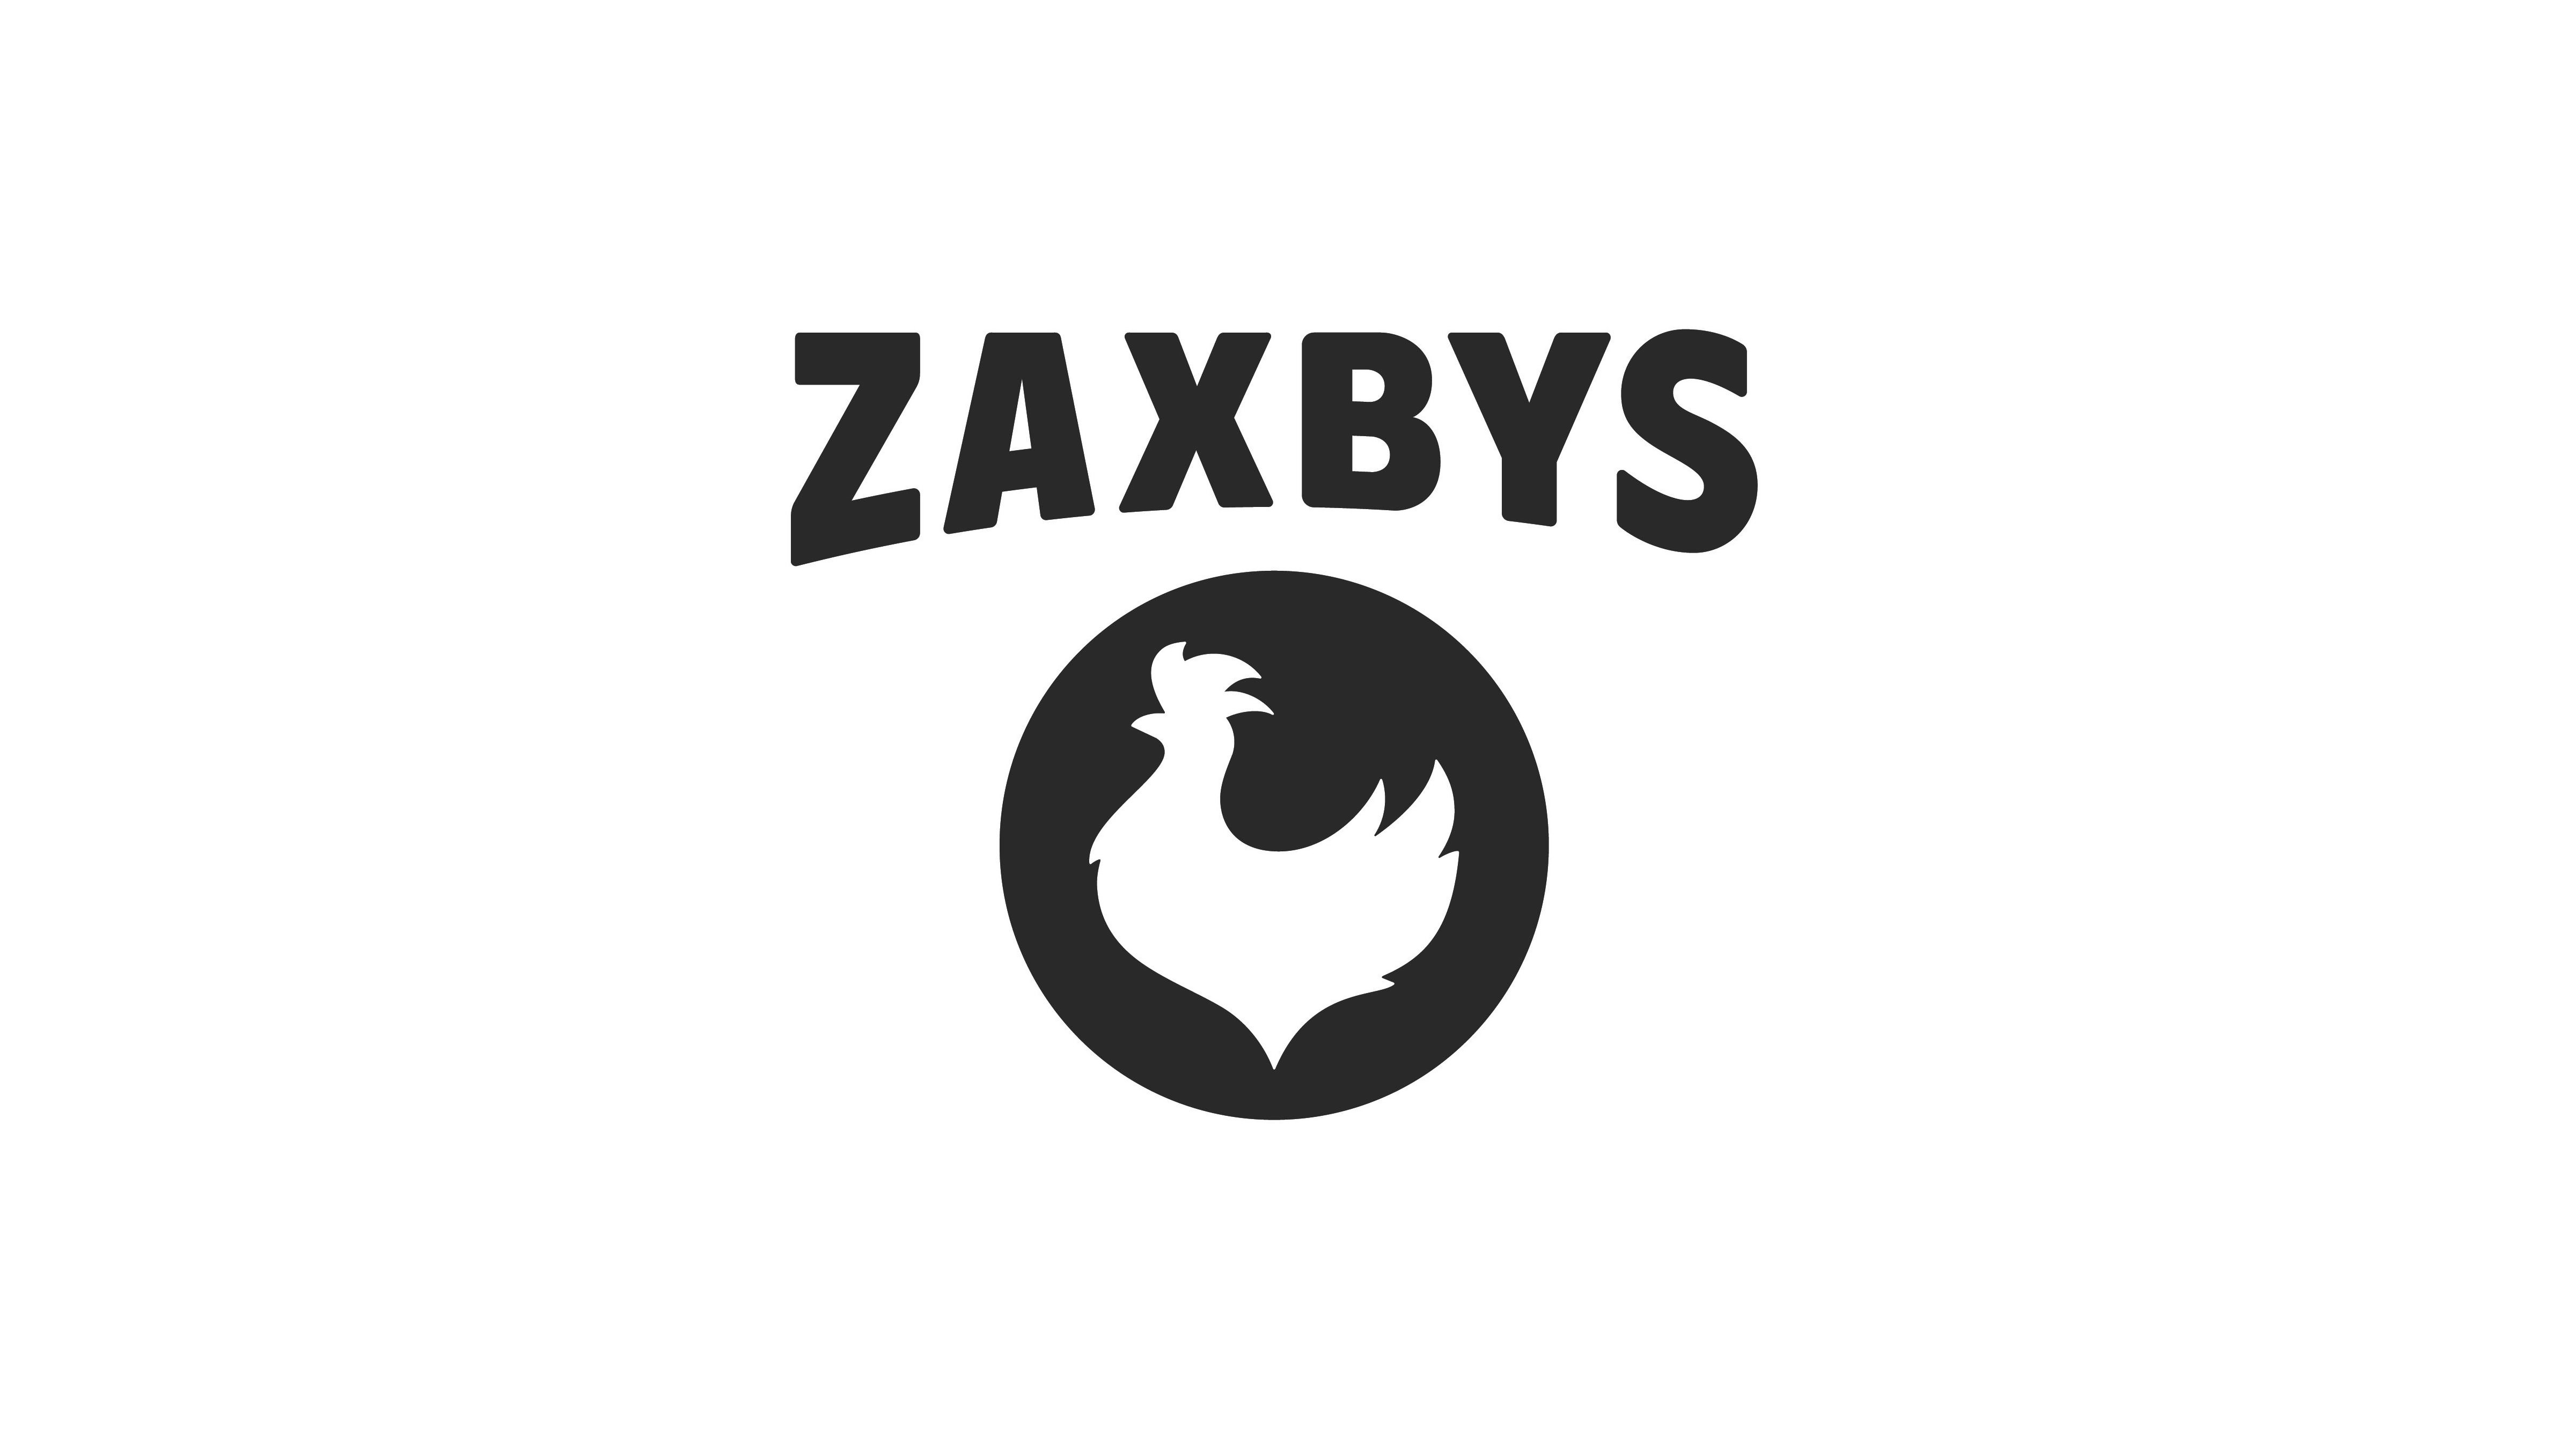 ZAXBYS